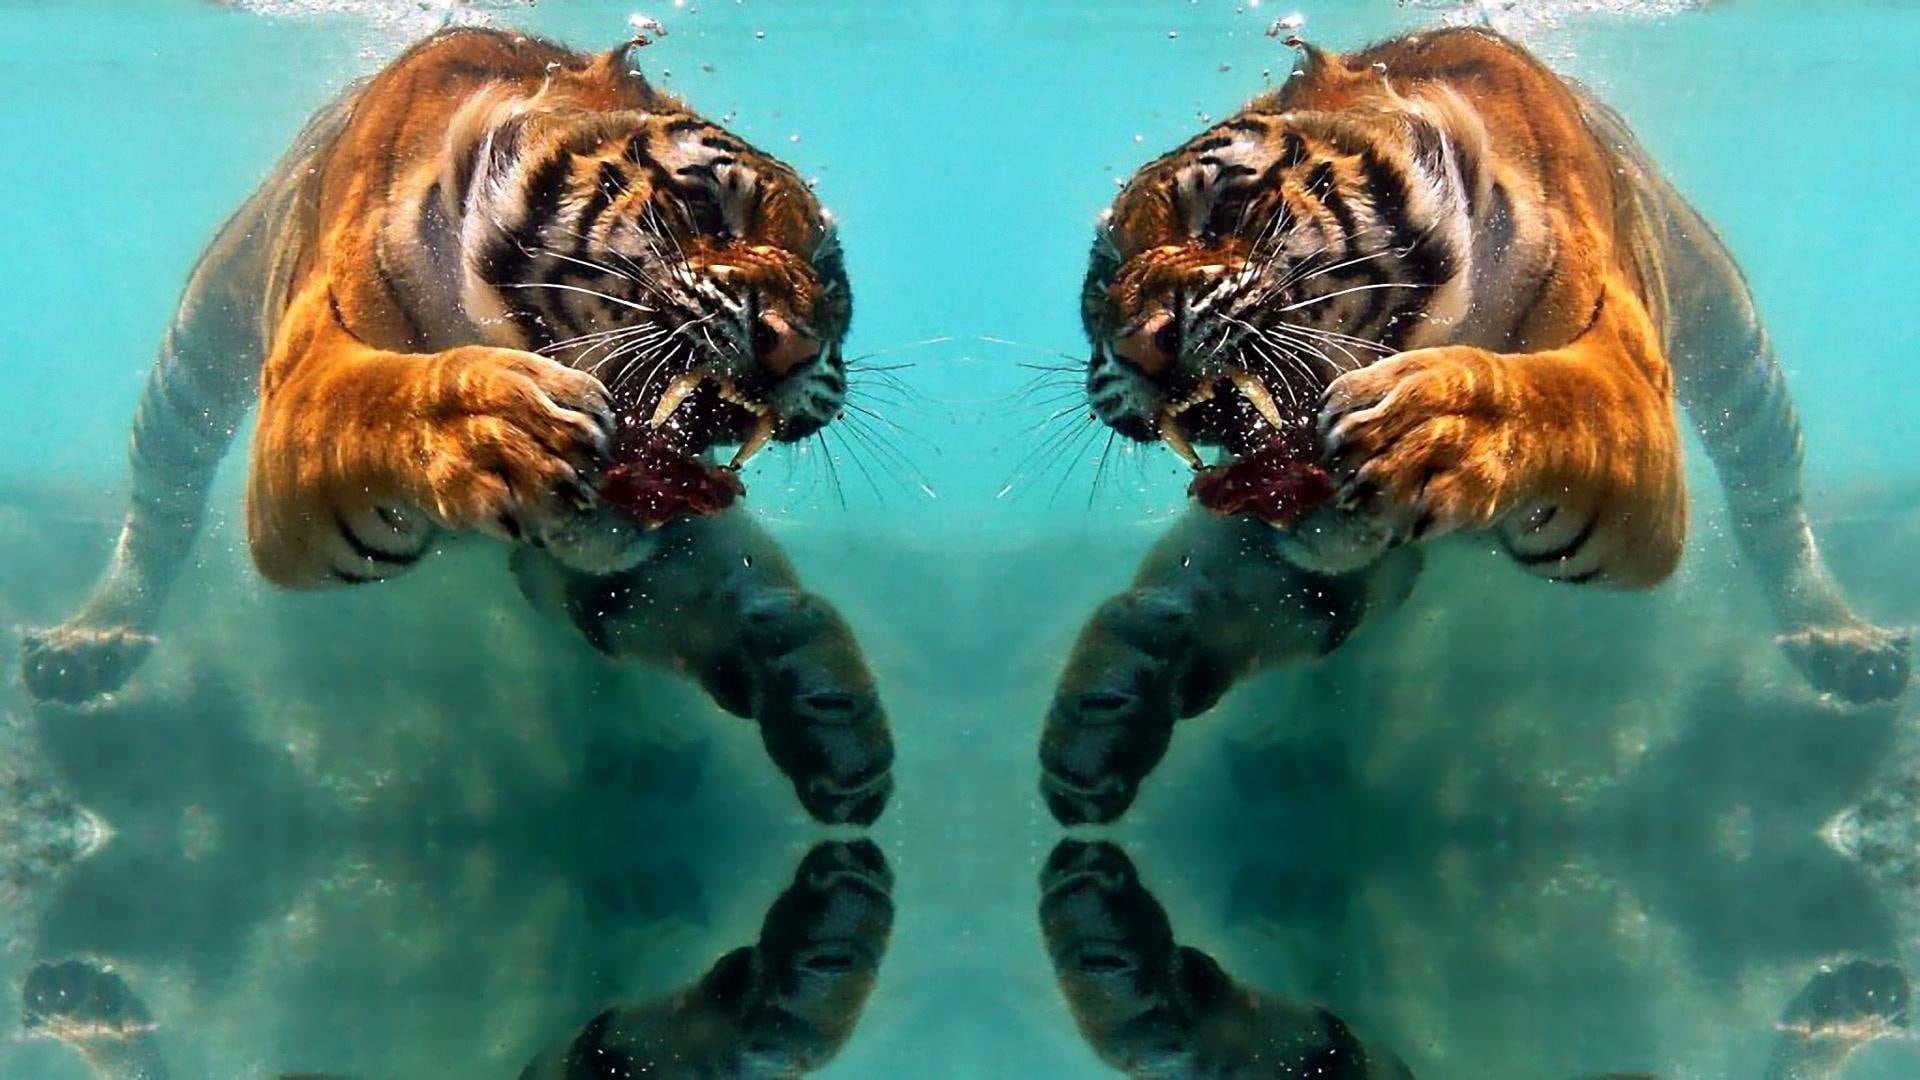 Tiger Reflection, water, mirror, predator, animals